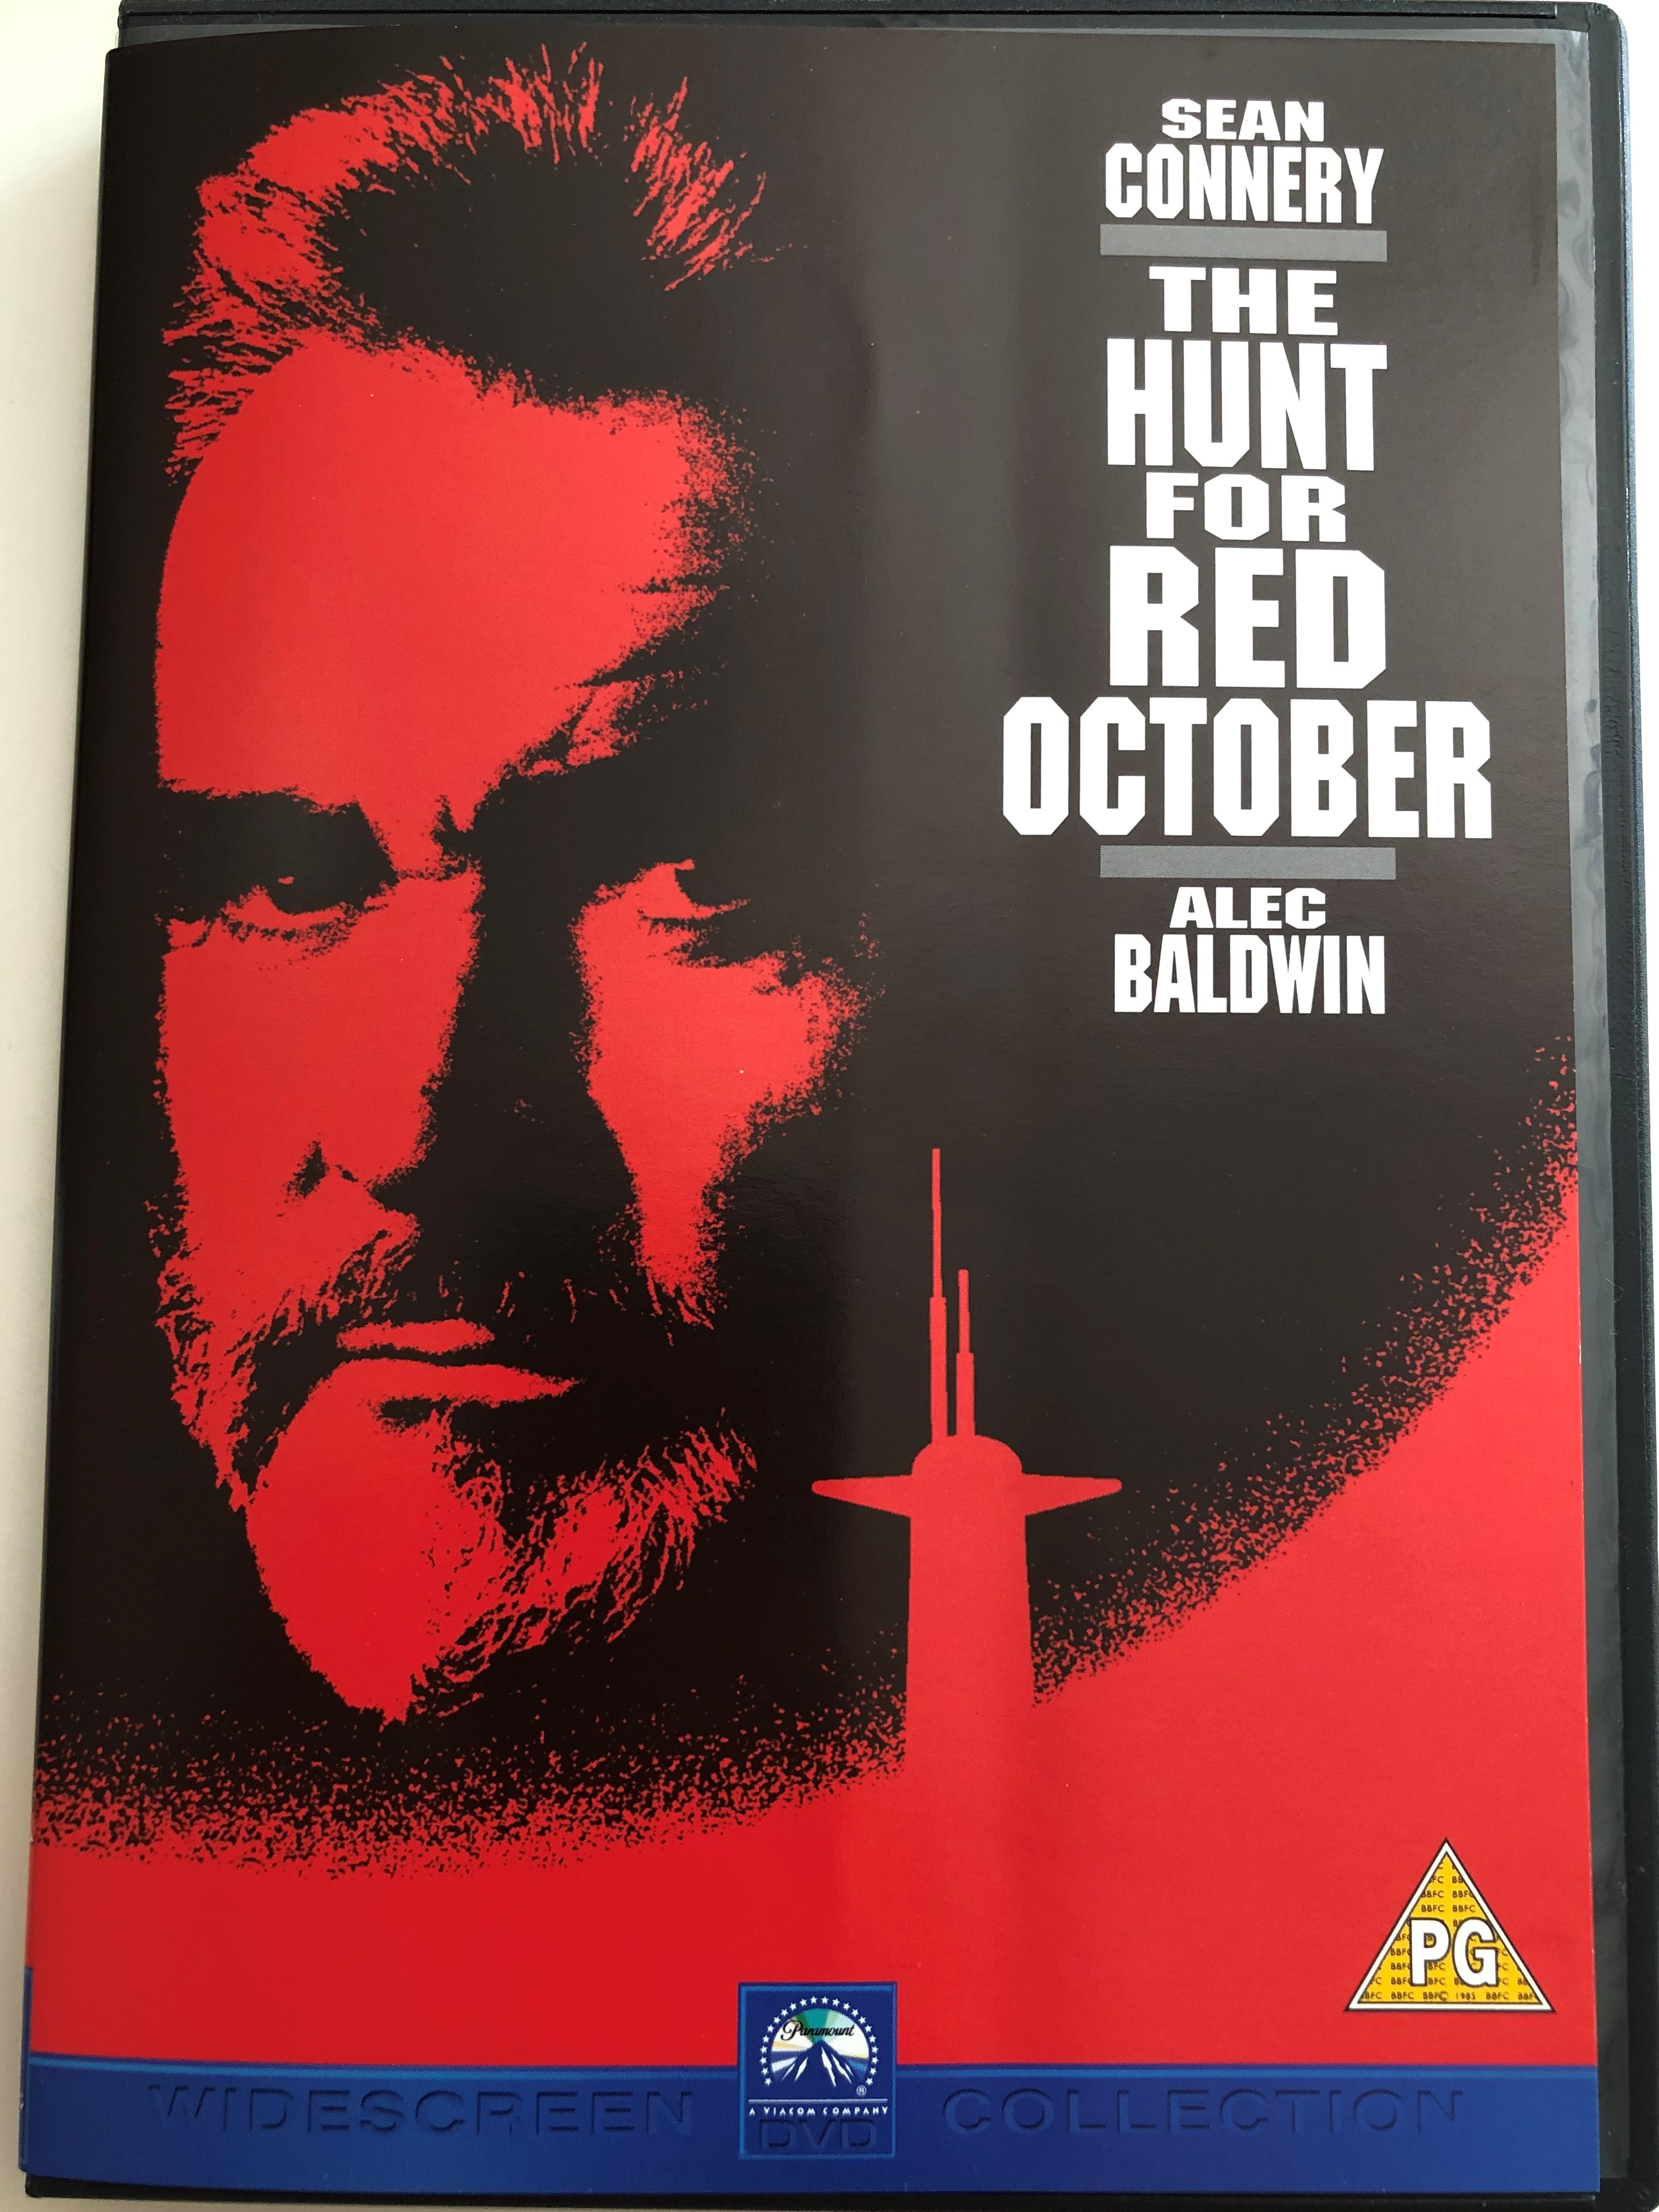 the-hunt-for-red-october-dvd-1990-directed-by-john-mctiernan-starring-sean-connery-alec-baldwin-scott-glenn-james-earl-jones-sam-neill-based-on-tom-clancy-s-novel-1-.jpg